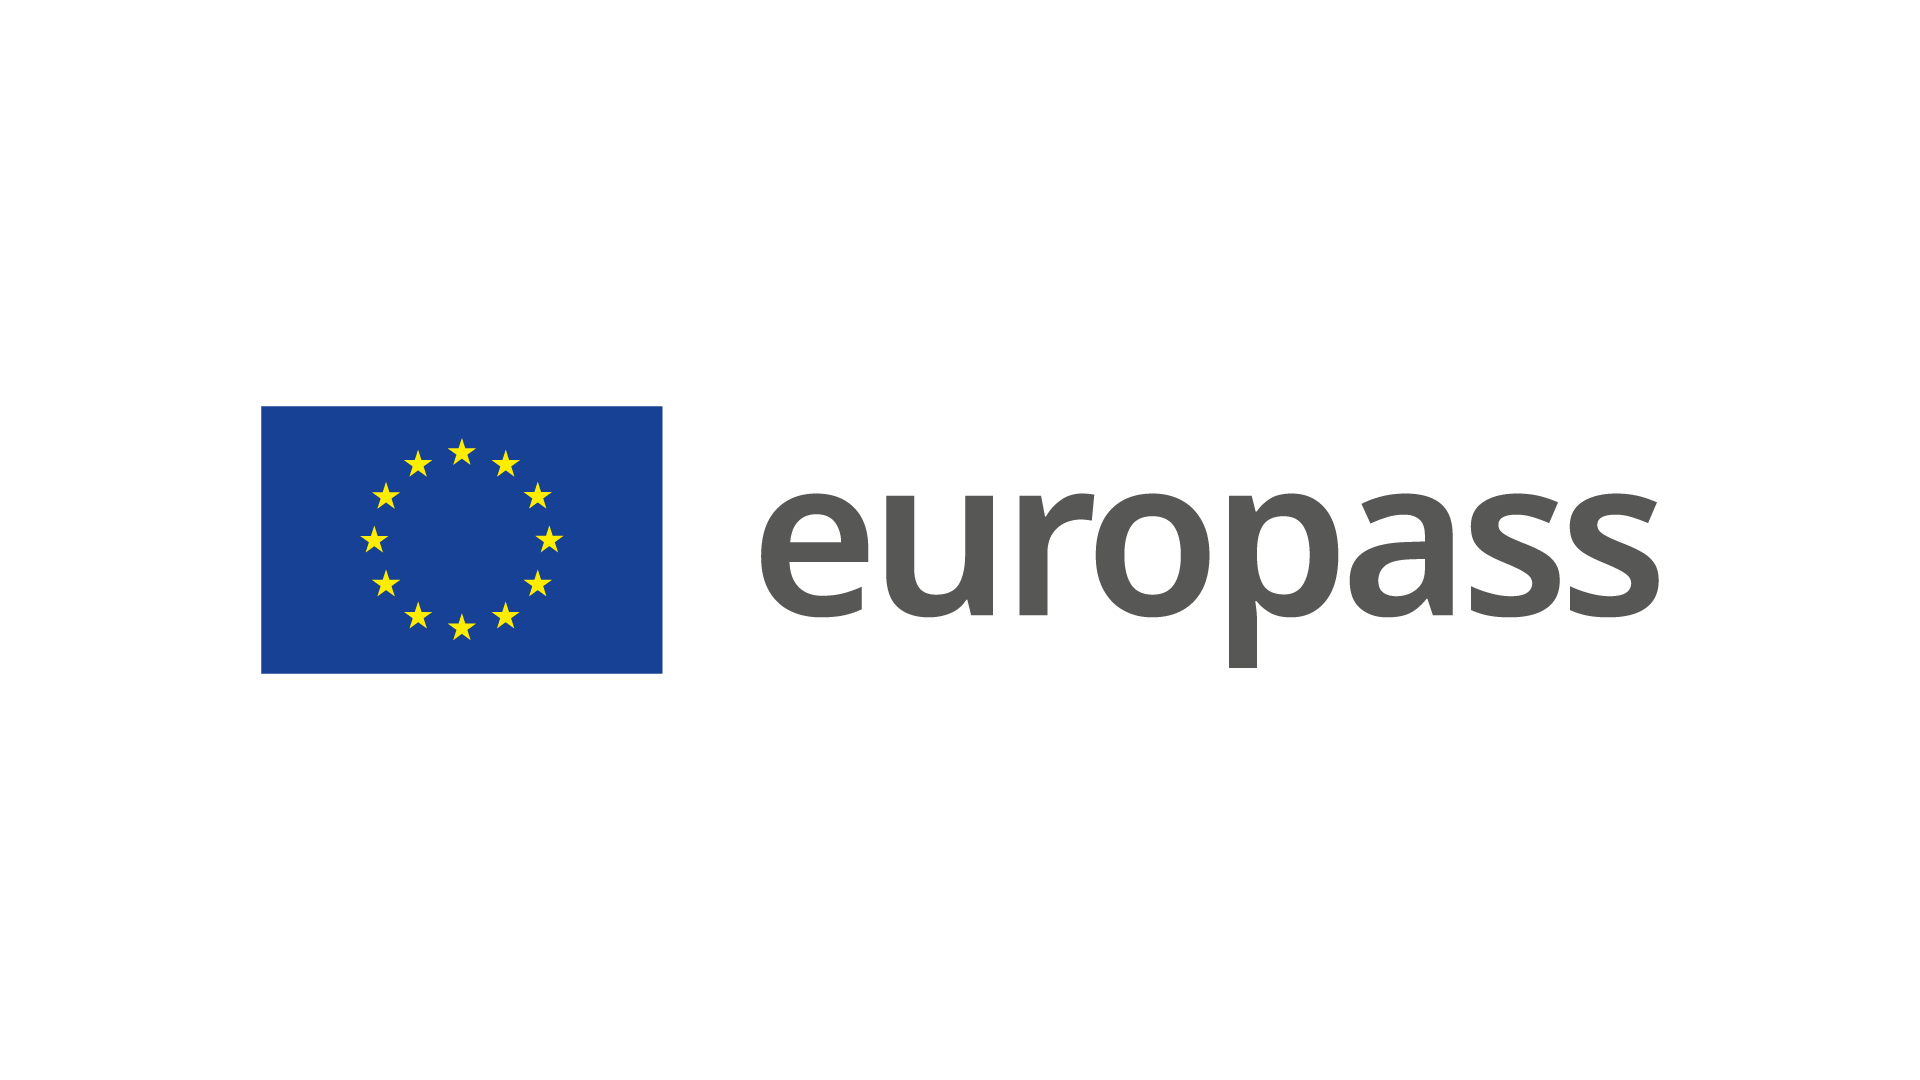 europass brandmark